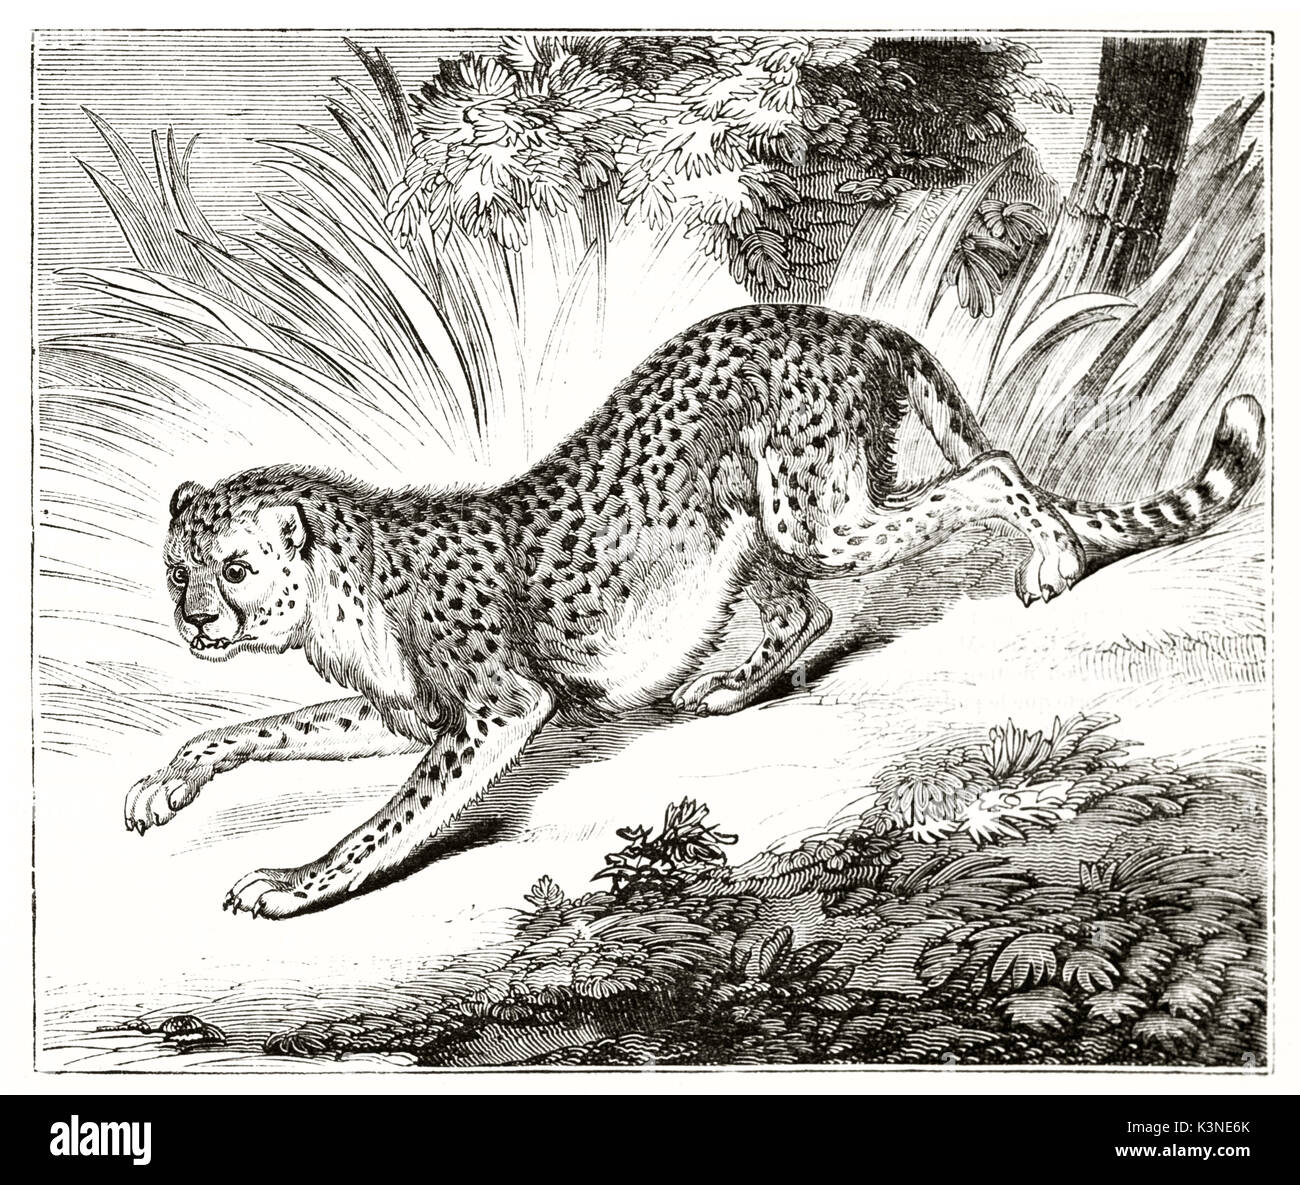 Vecchia illustrazione di un ghepardo (Acinonyx jubatus) esecuzione veloce nella foresta con la sua tipica pelliccia tratteggiata. Da autore non identificato pubblicato il Magasin pittoresco Paris1839 Foto Stock